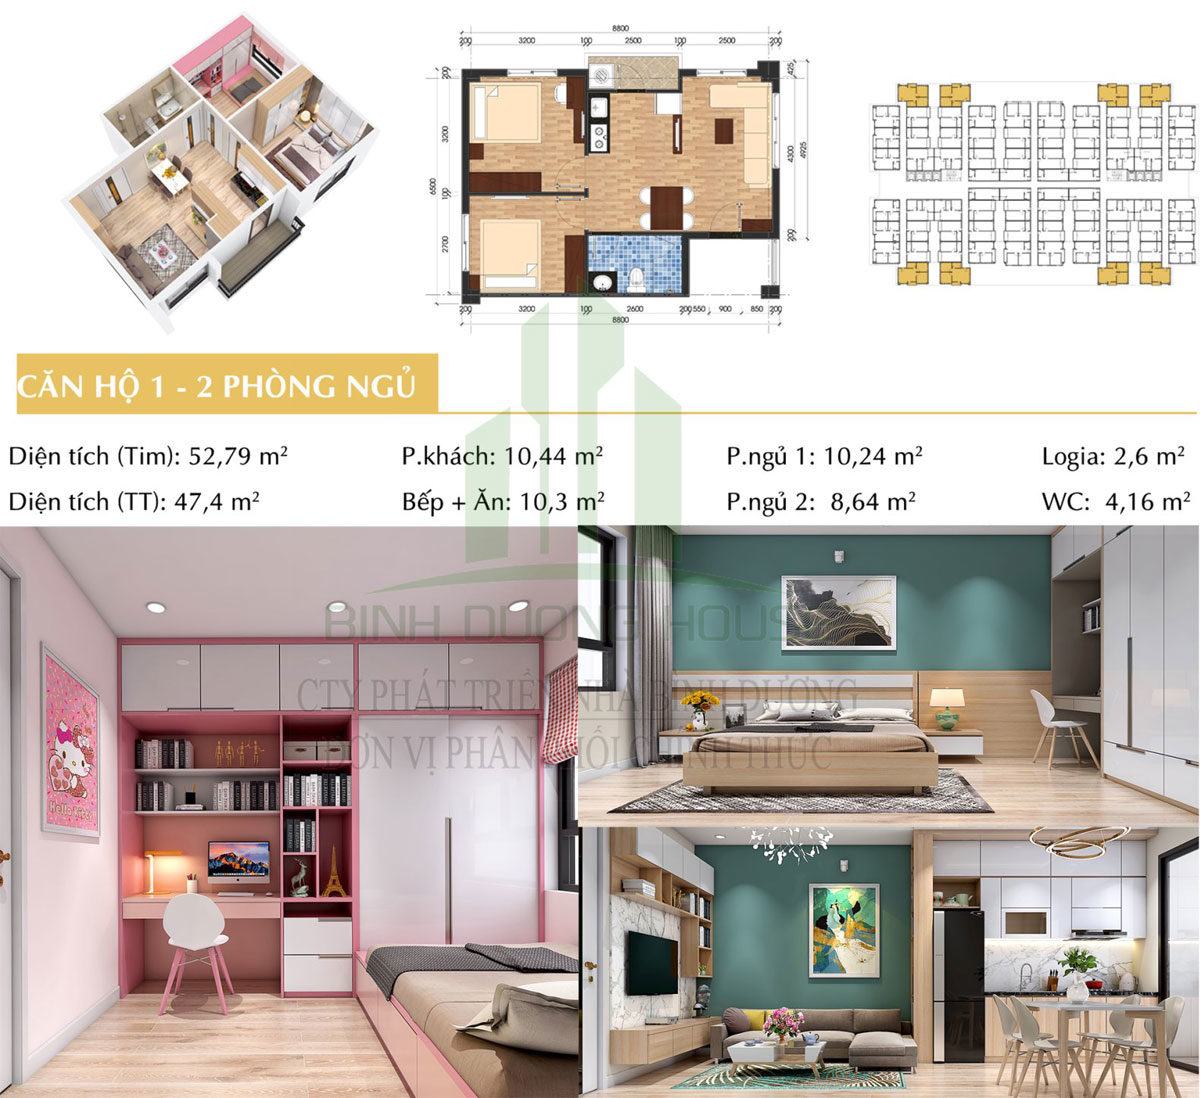 Thiết kế căn hộ loại 1 - 2 phòng ngủ - Unico Thăng Long